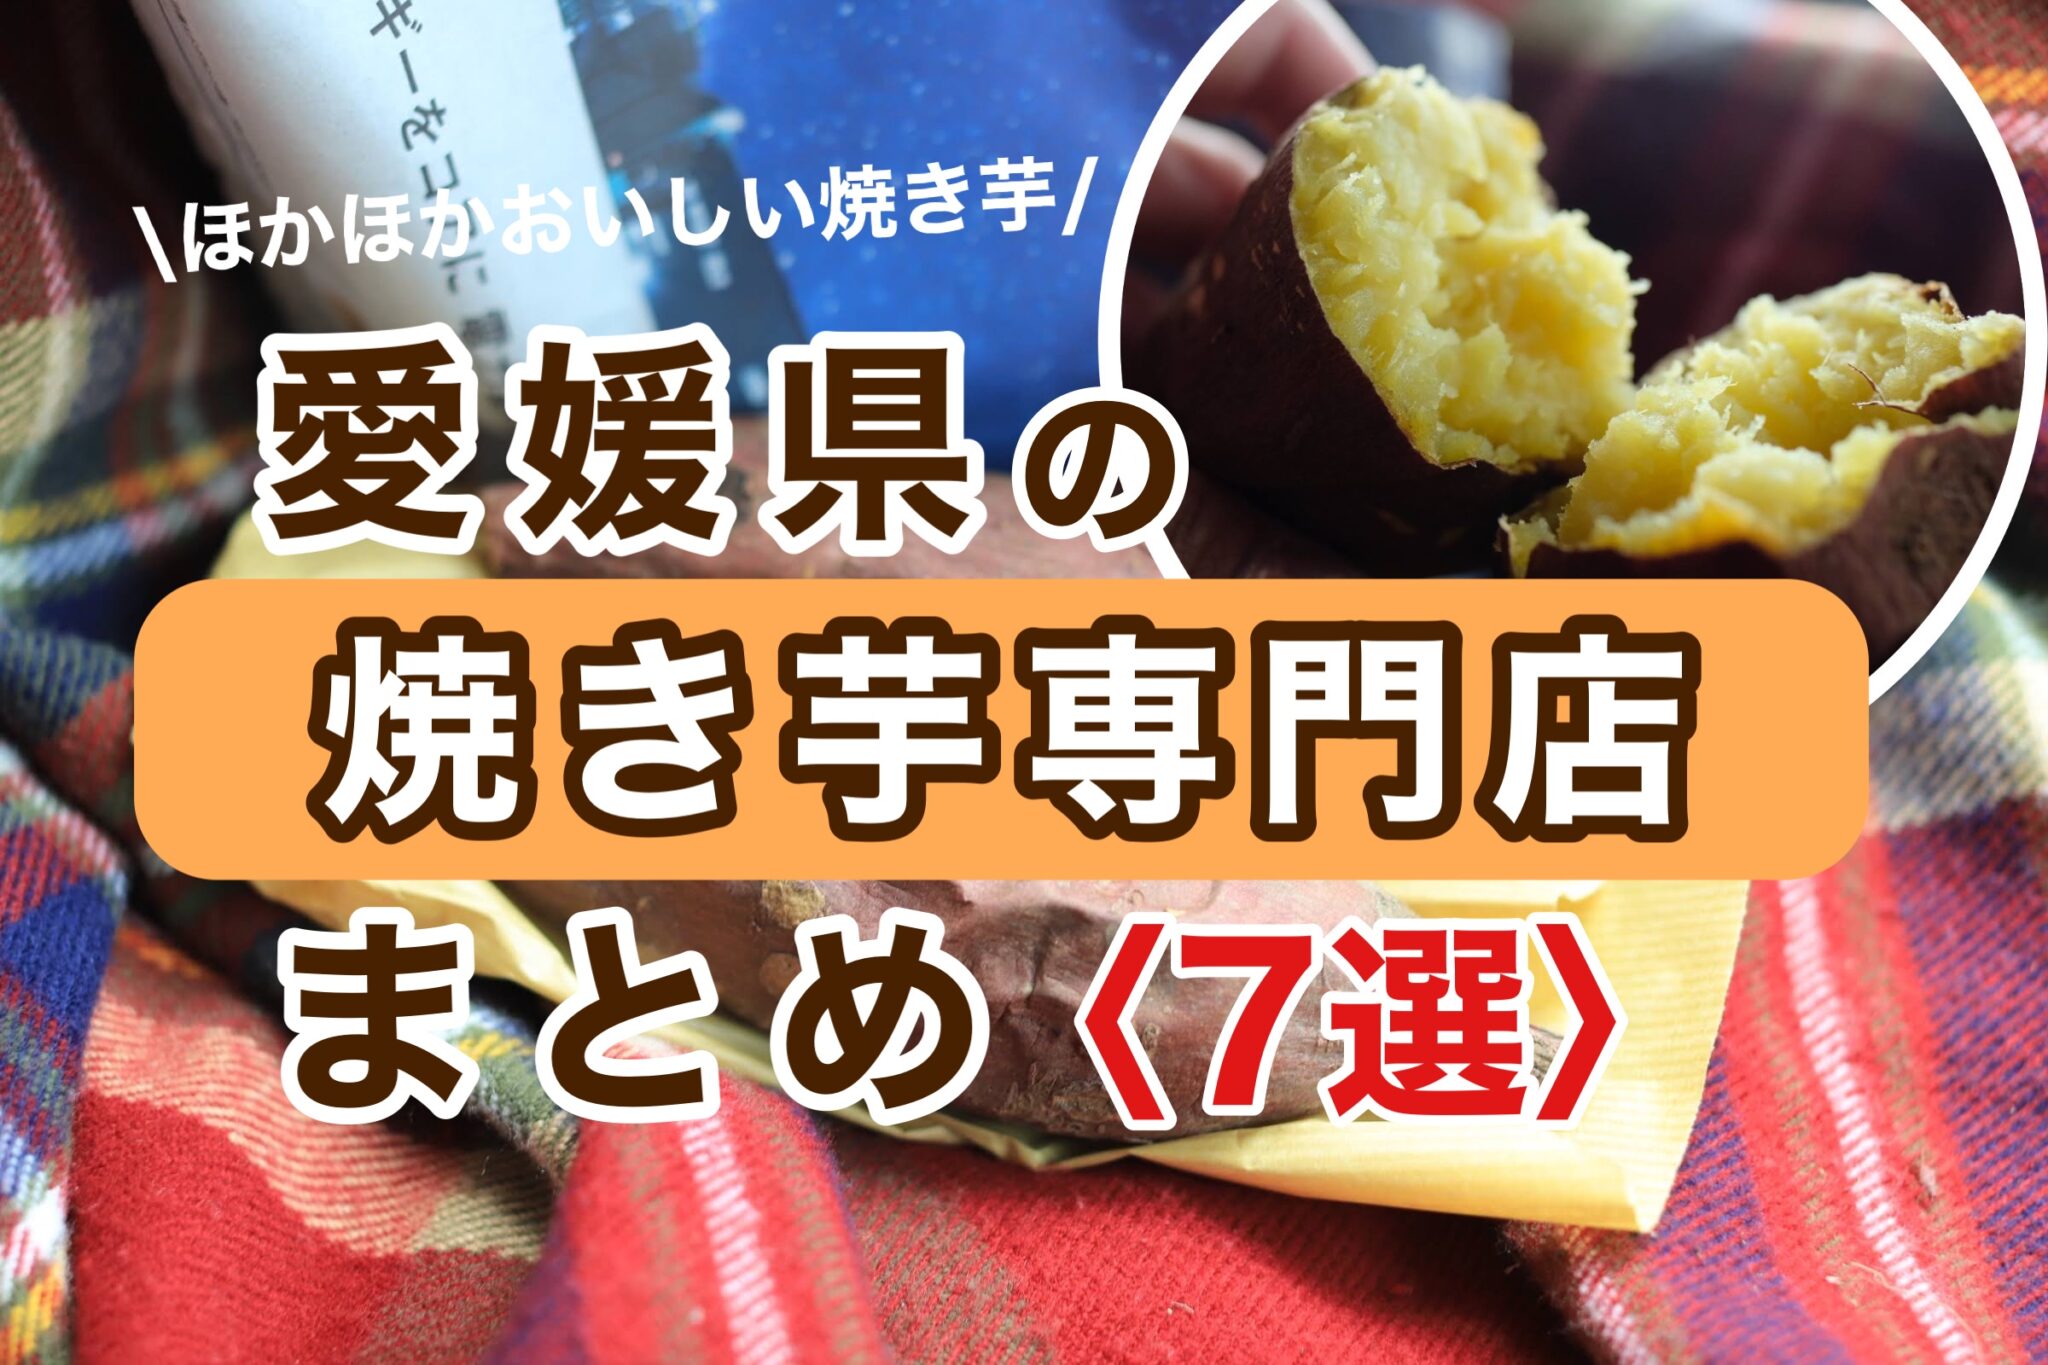 愛媛県焼き芋まとめサムネイル画像